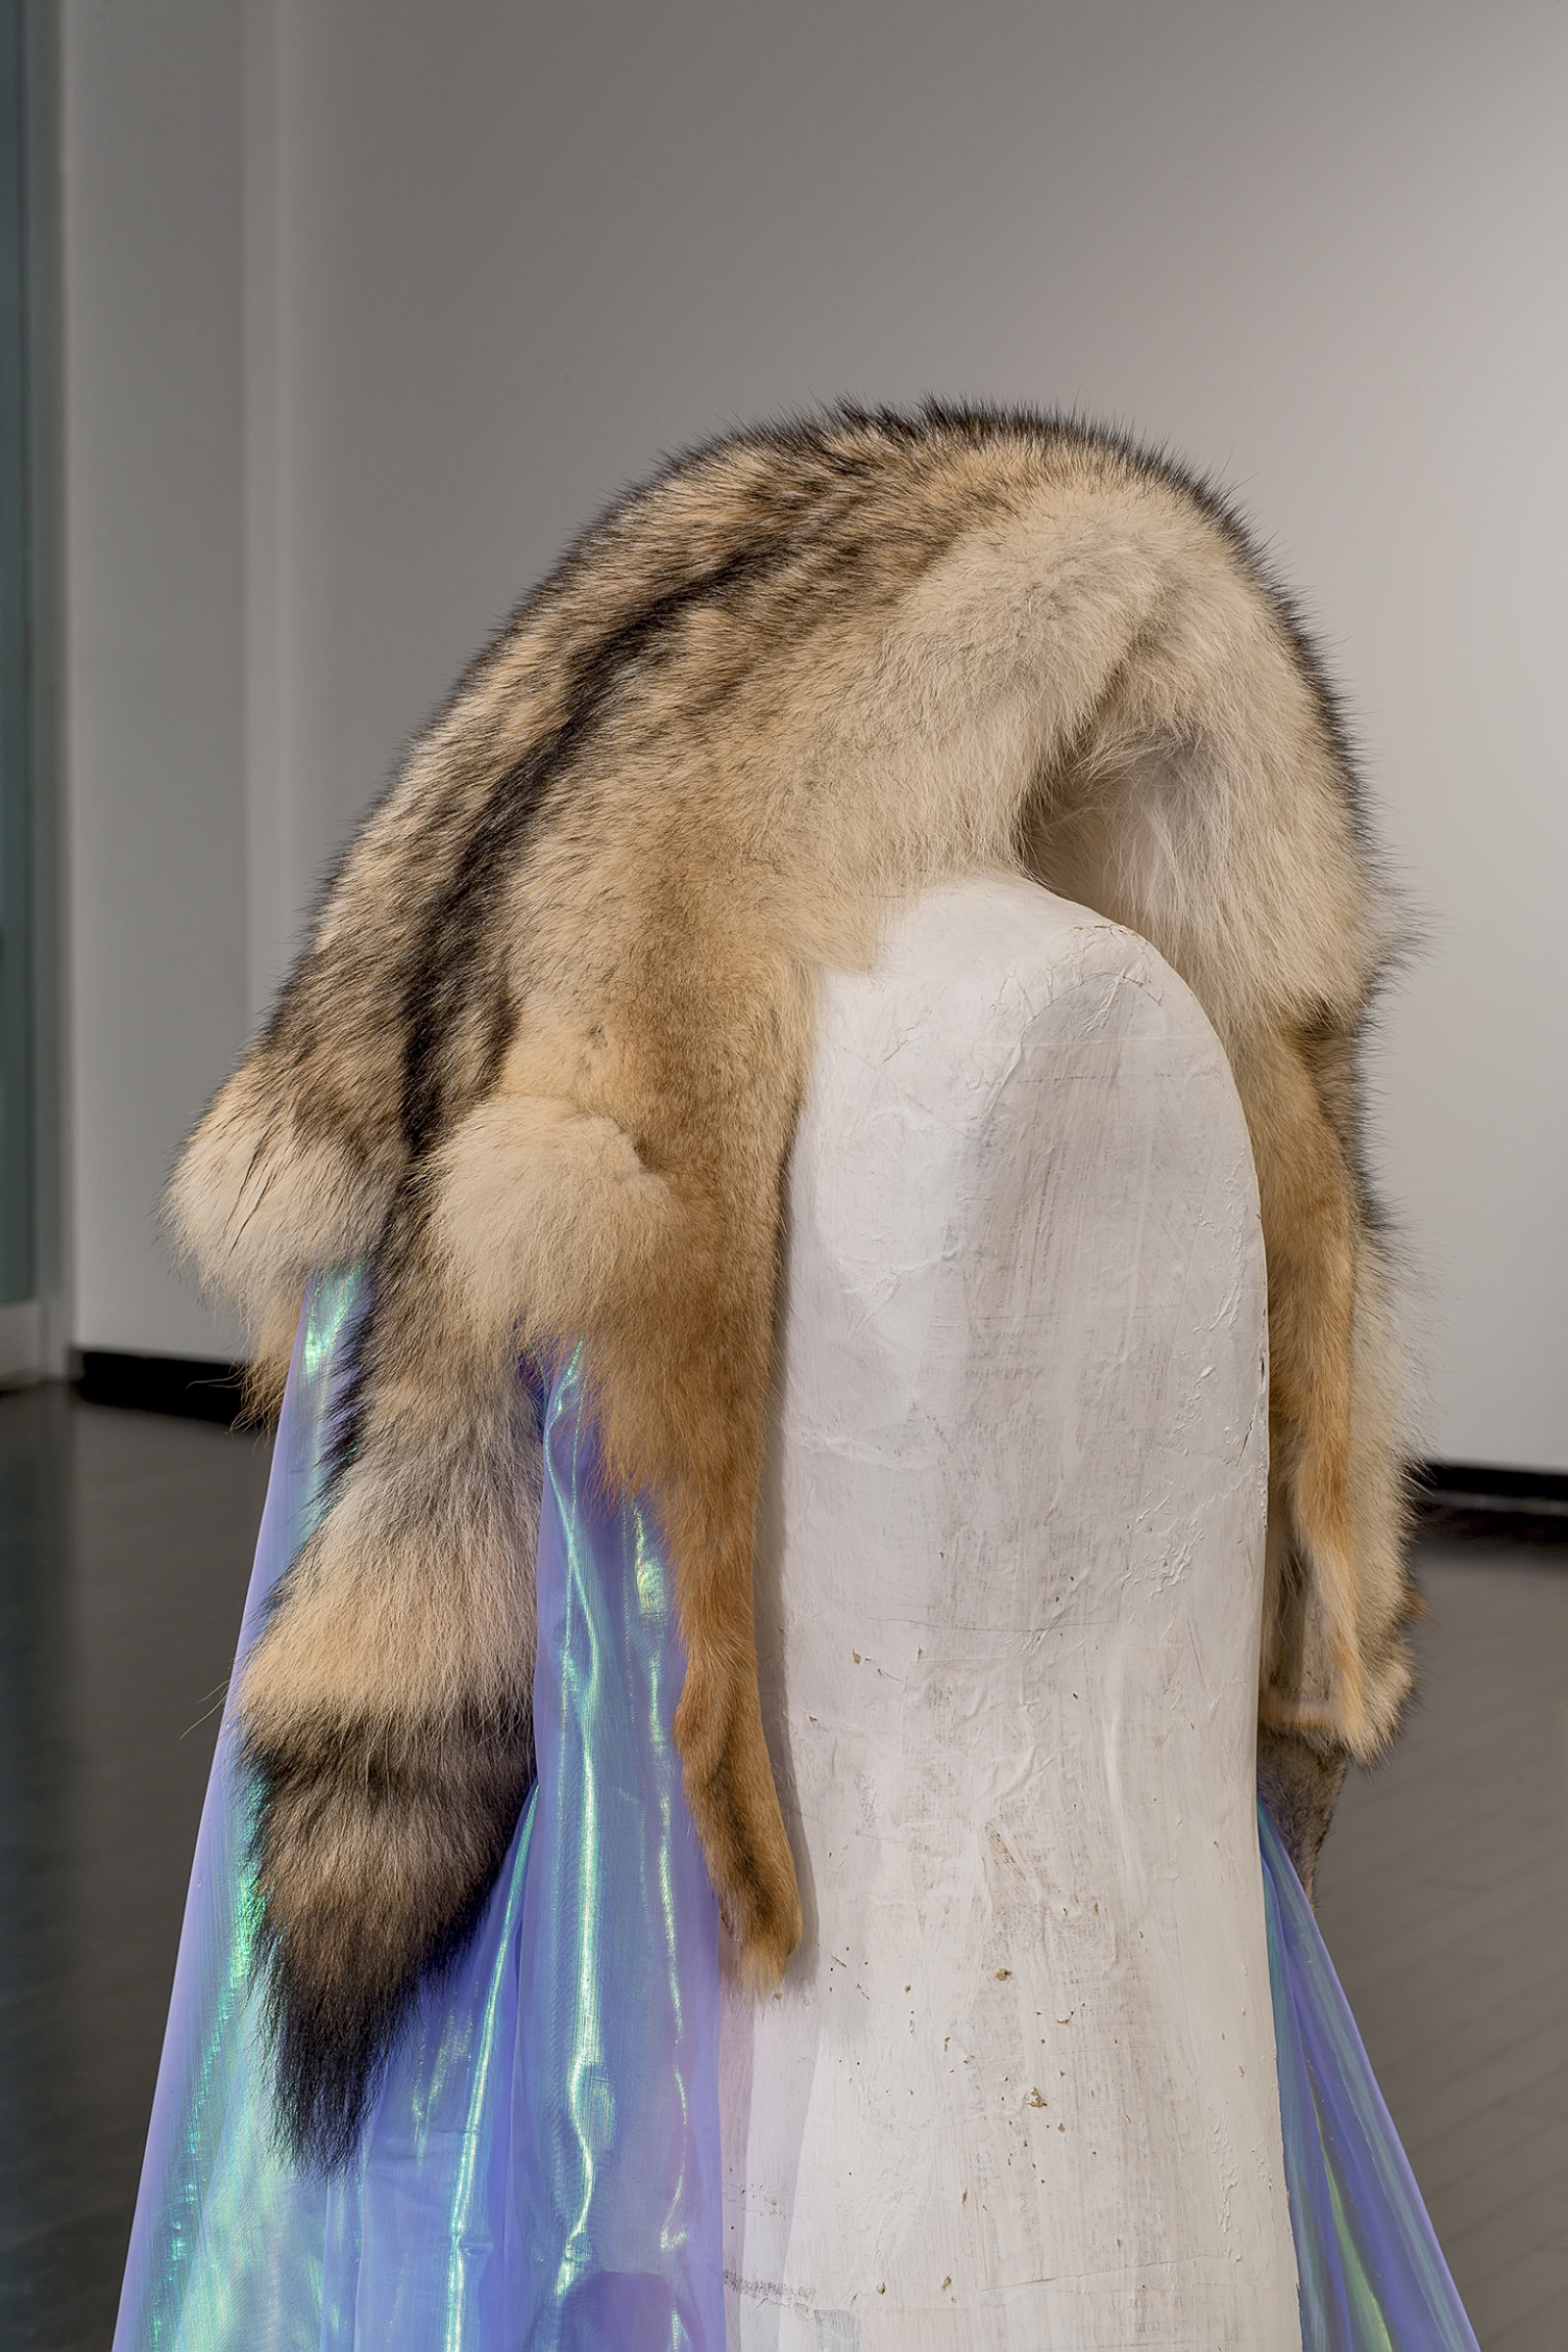 Duane Linklater, Beast of Burden (detail), 2016, coyote fur, dress form, gypsum, steel, wood, dimensions variable